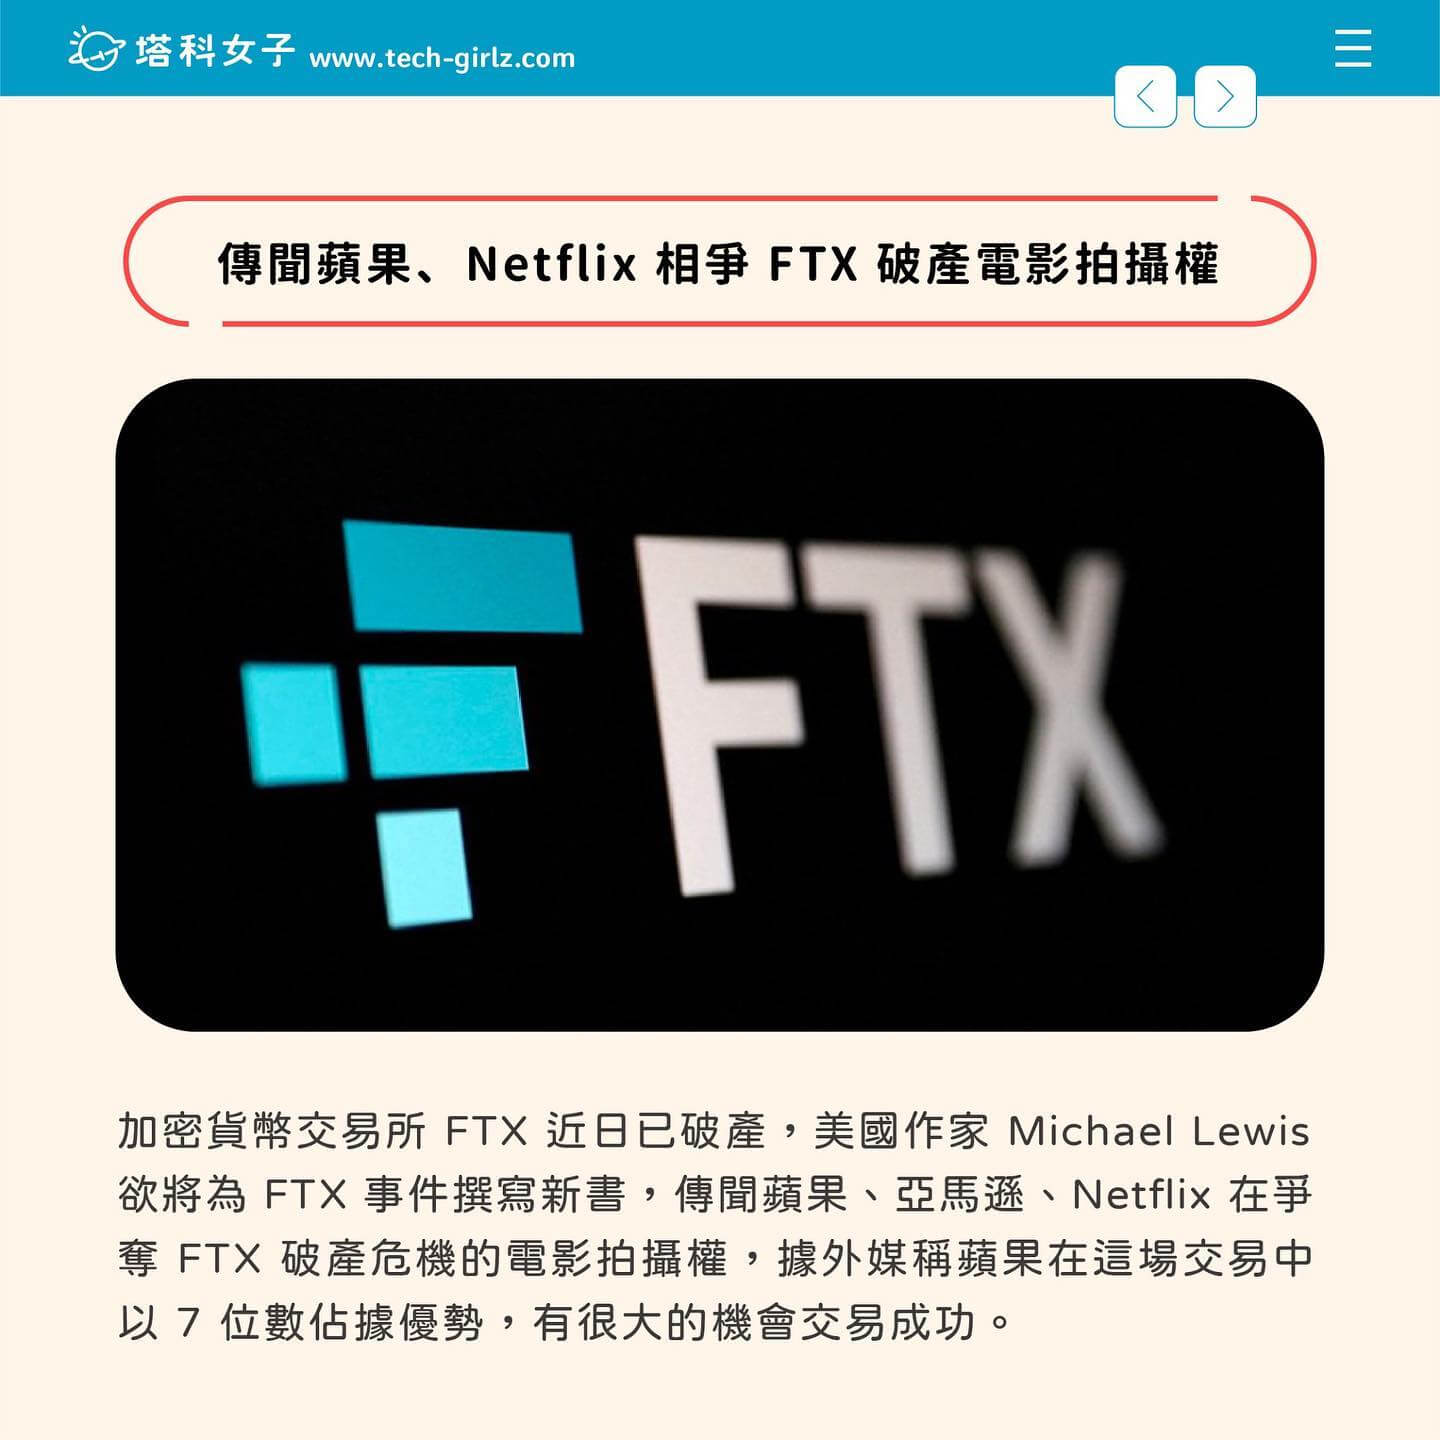 傳聞蘋果、Netflix 相爭 FTX 破產的電影拍攝權